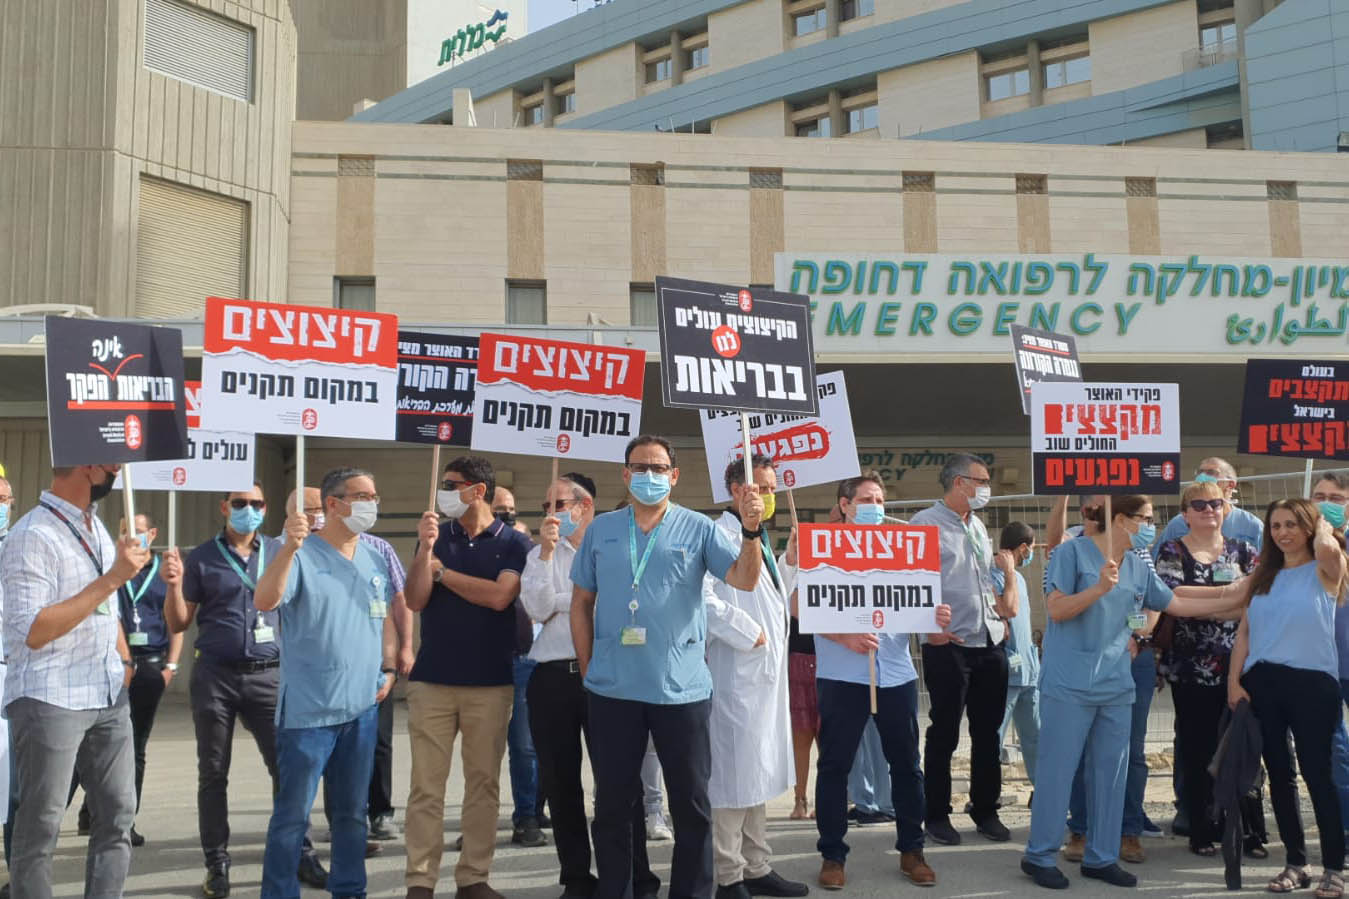 مظاهرة للأطباء المضربين في المركز الطبي سوروكا في بئر السبع (تصوير: رابطة الأطباء)